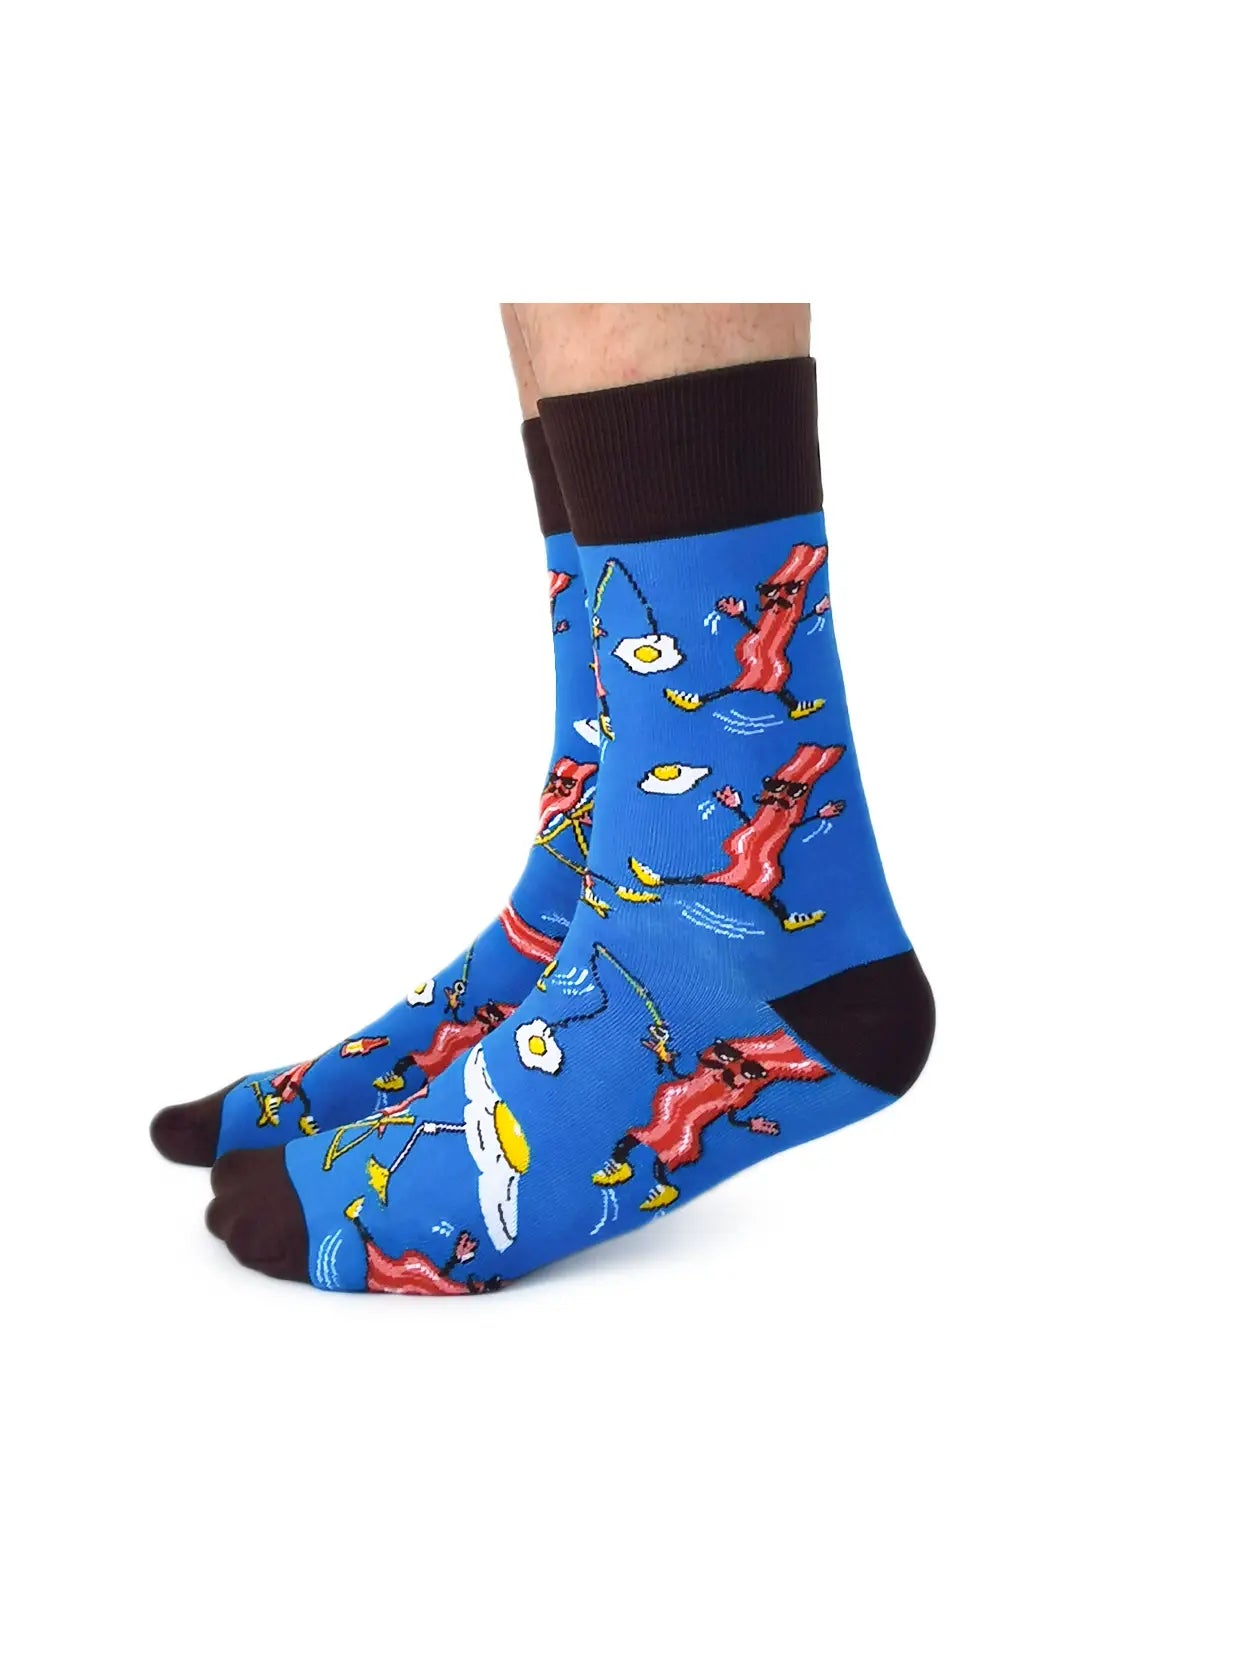 Sir Bacon Socks